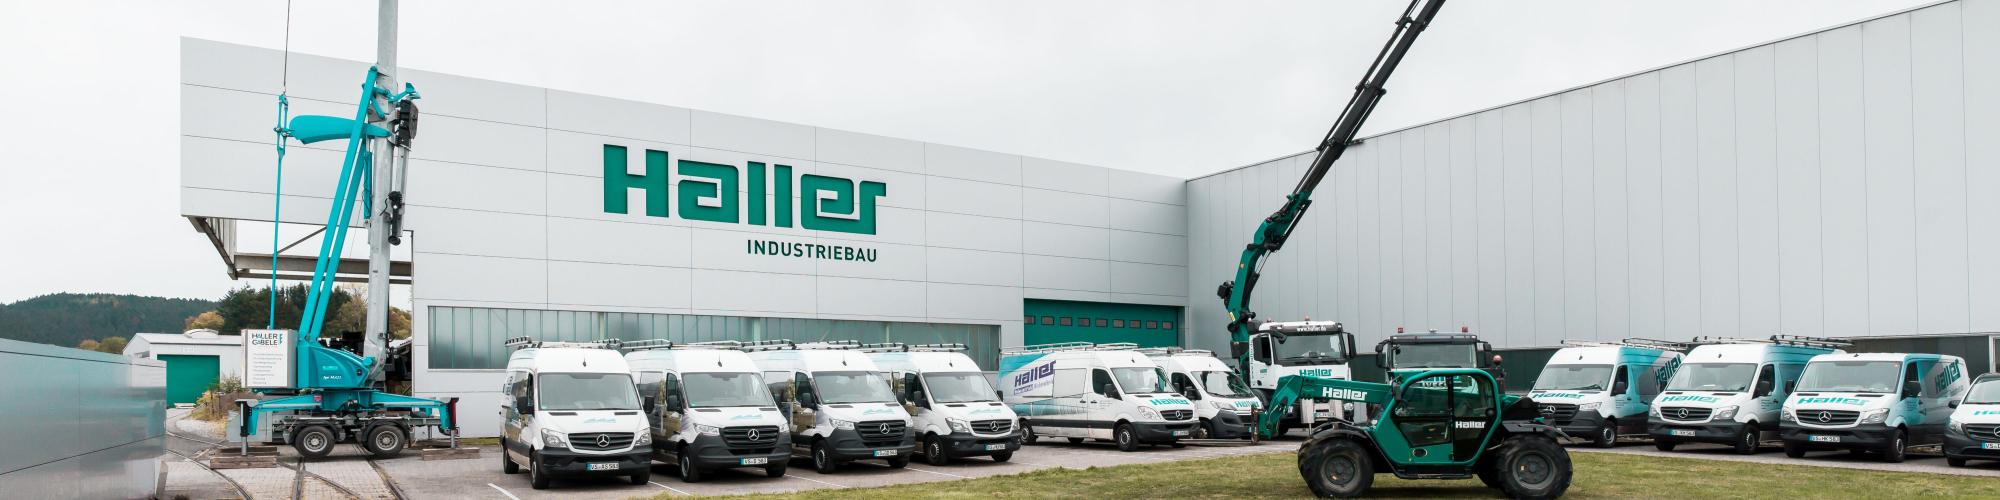 Haller Industriebau GmbH